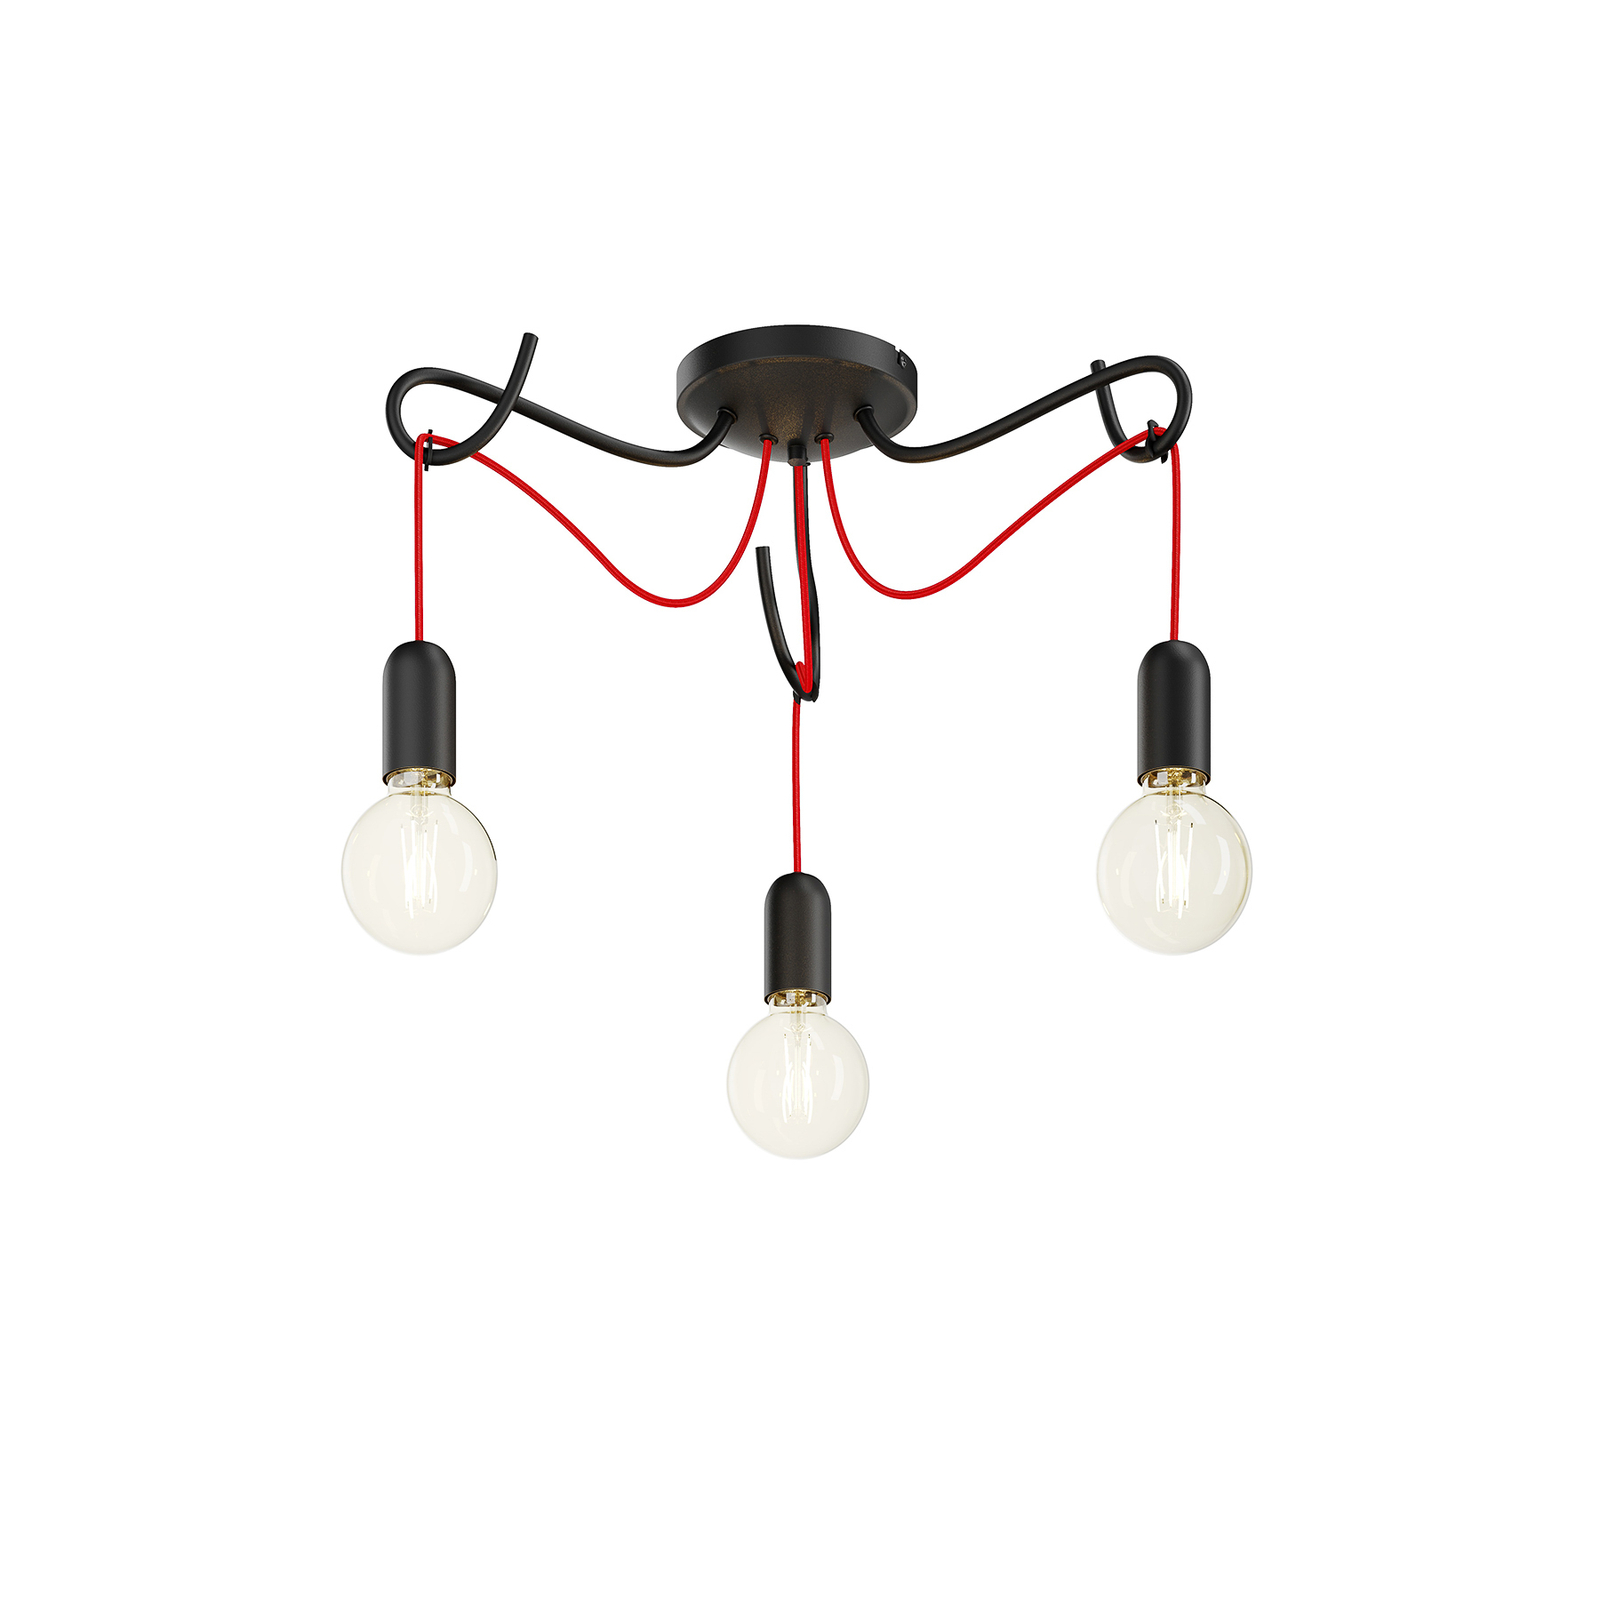 Lucande Jorna plafonnier, 3 lampes, câble rouge